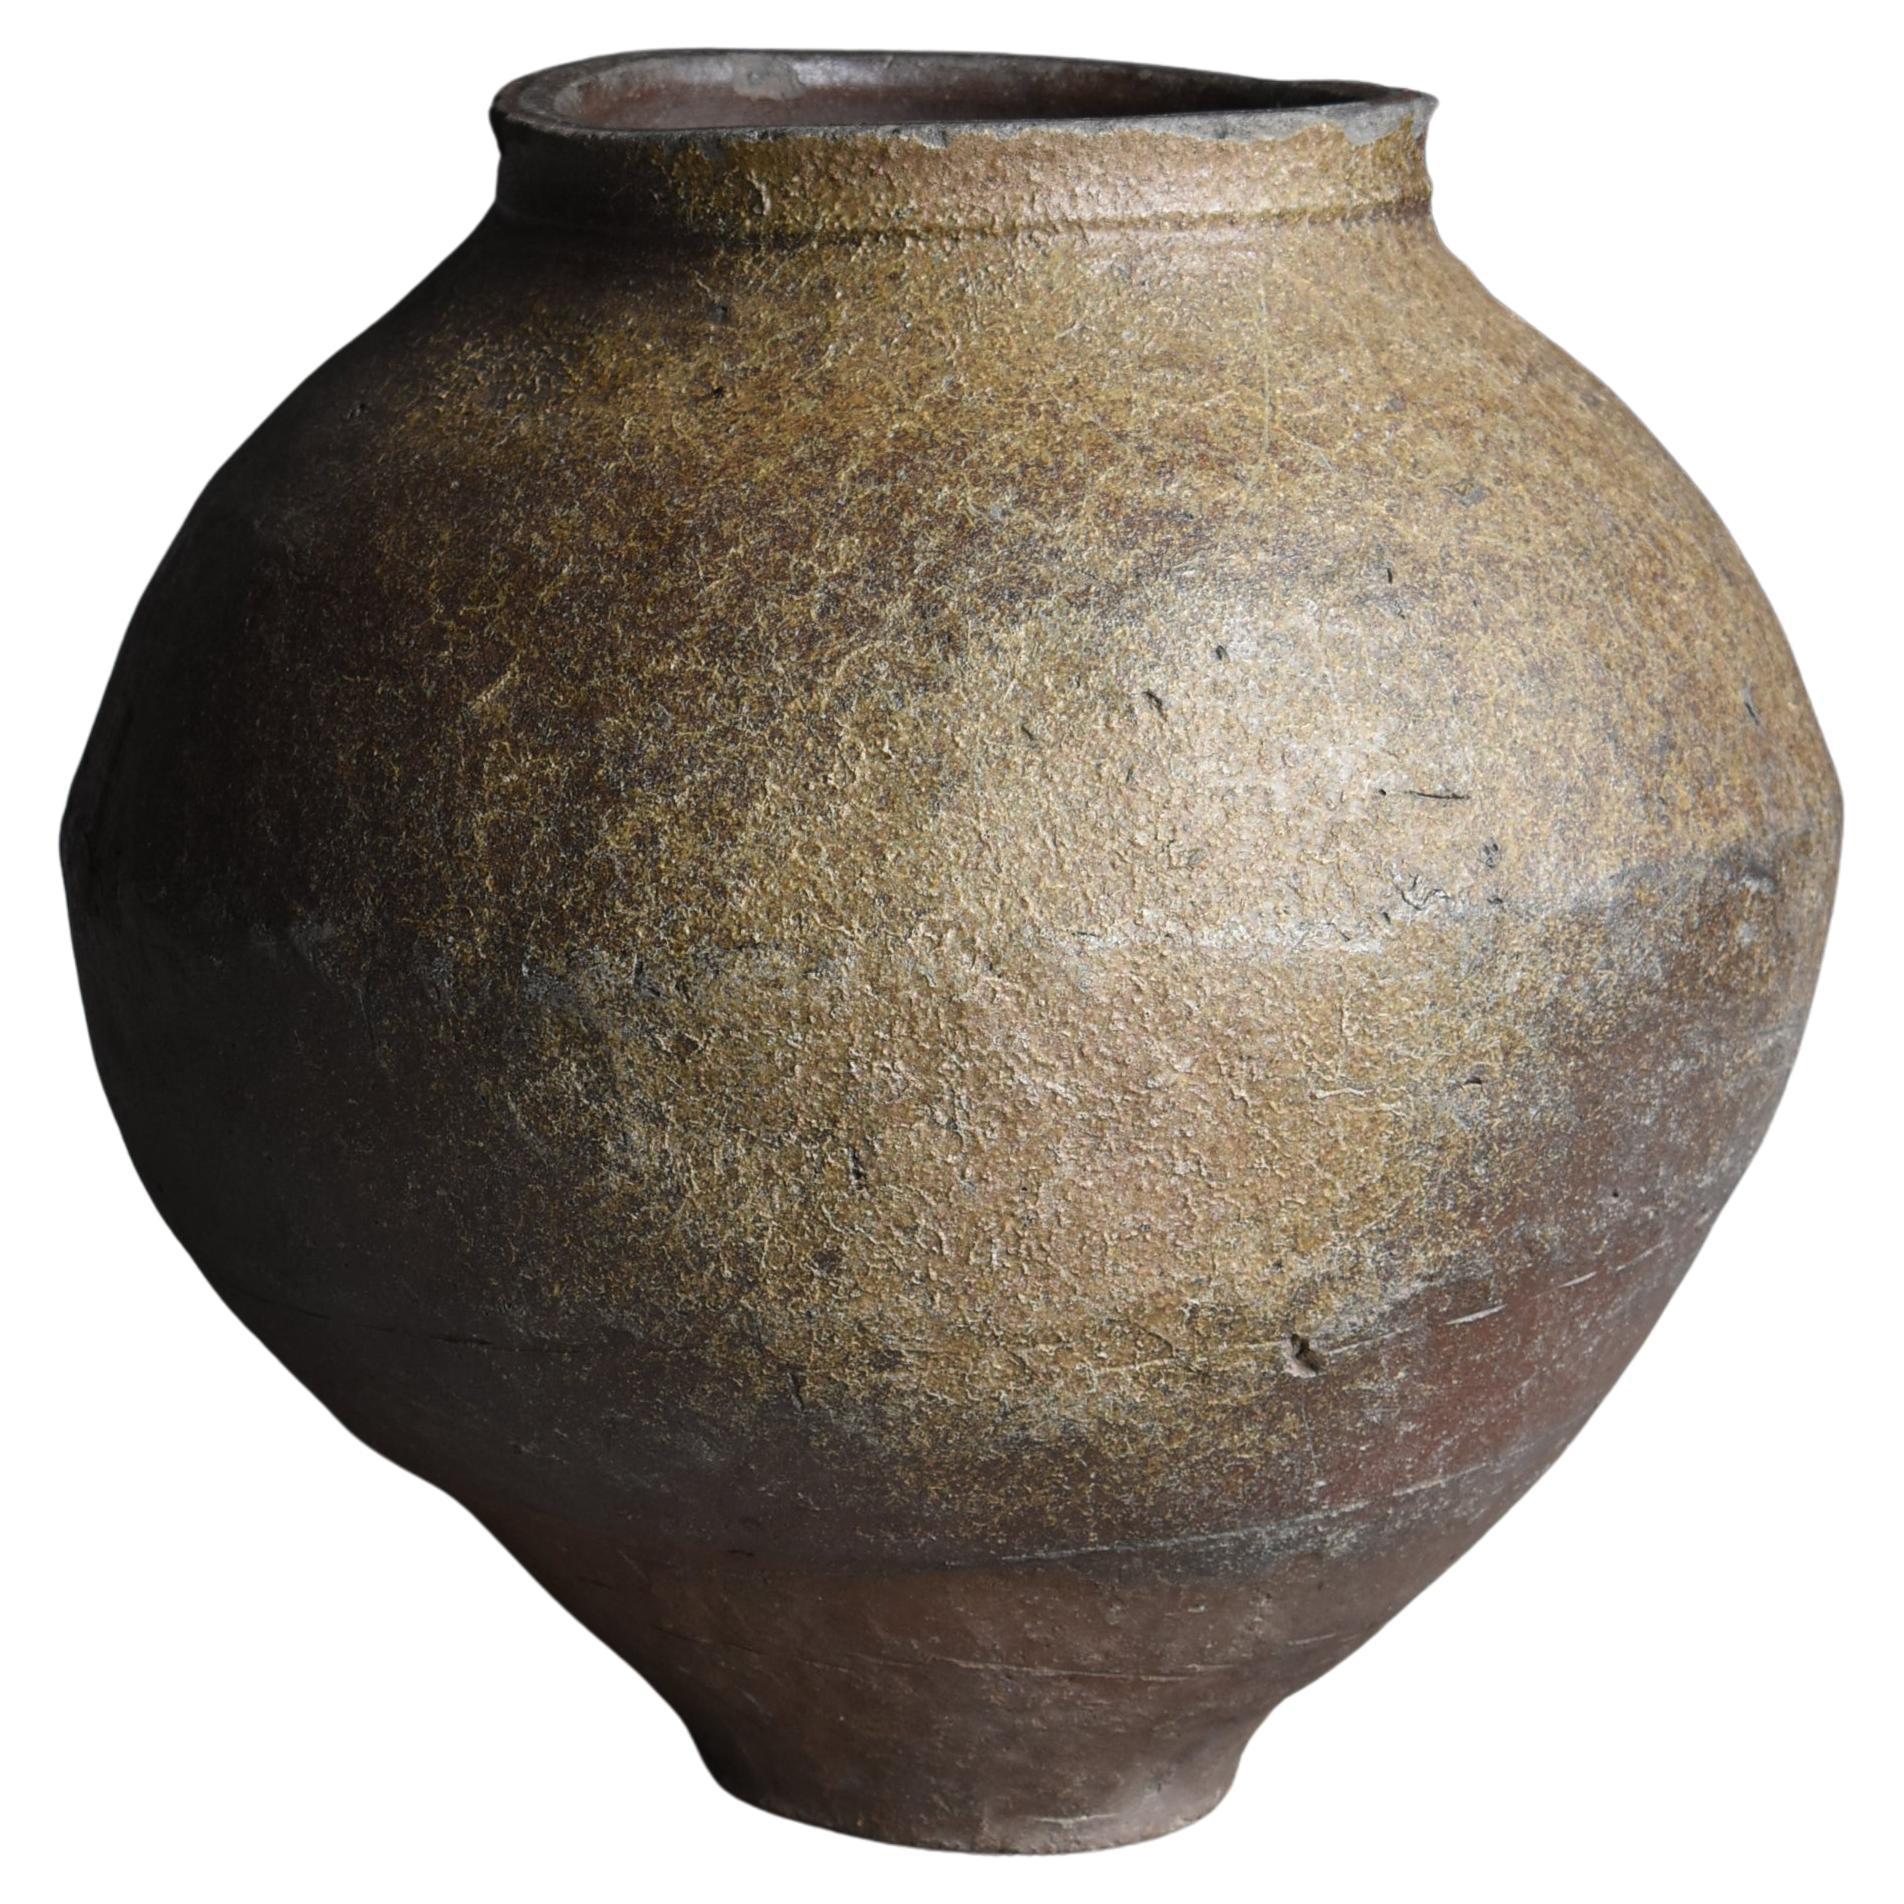 Japanese Antique Large Pottery Vase 14-16th Century / Flower Vase Wabisabi